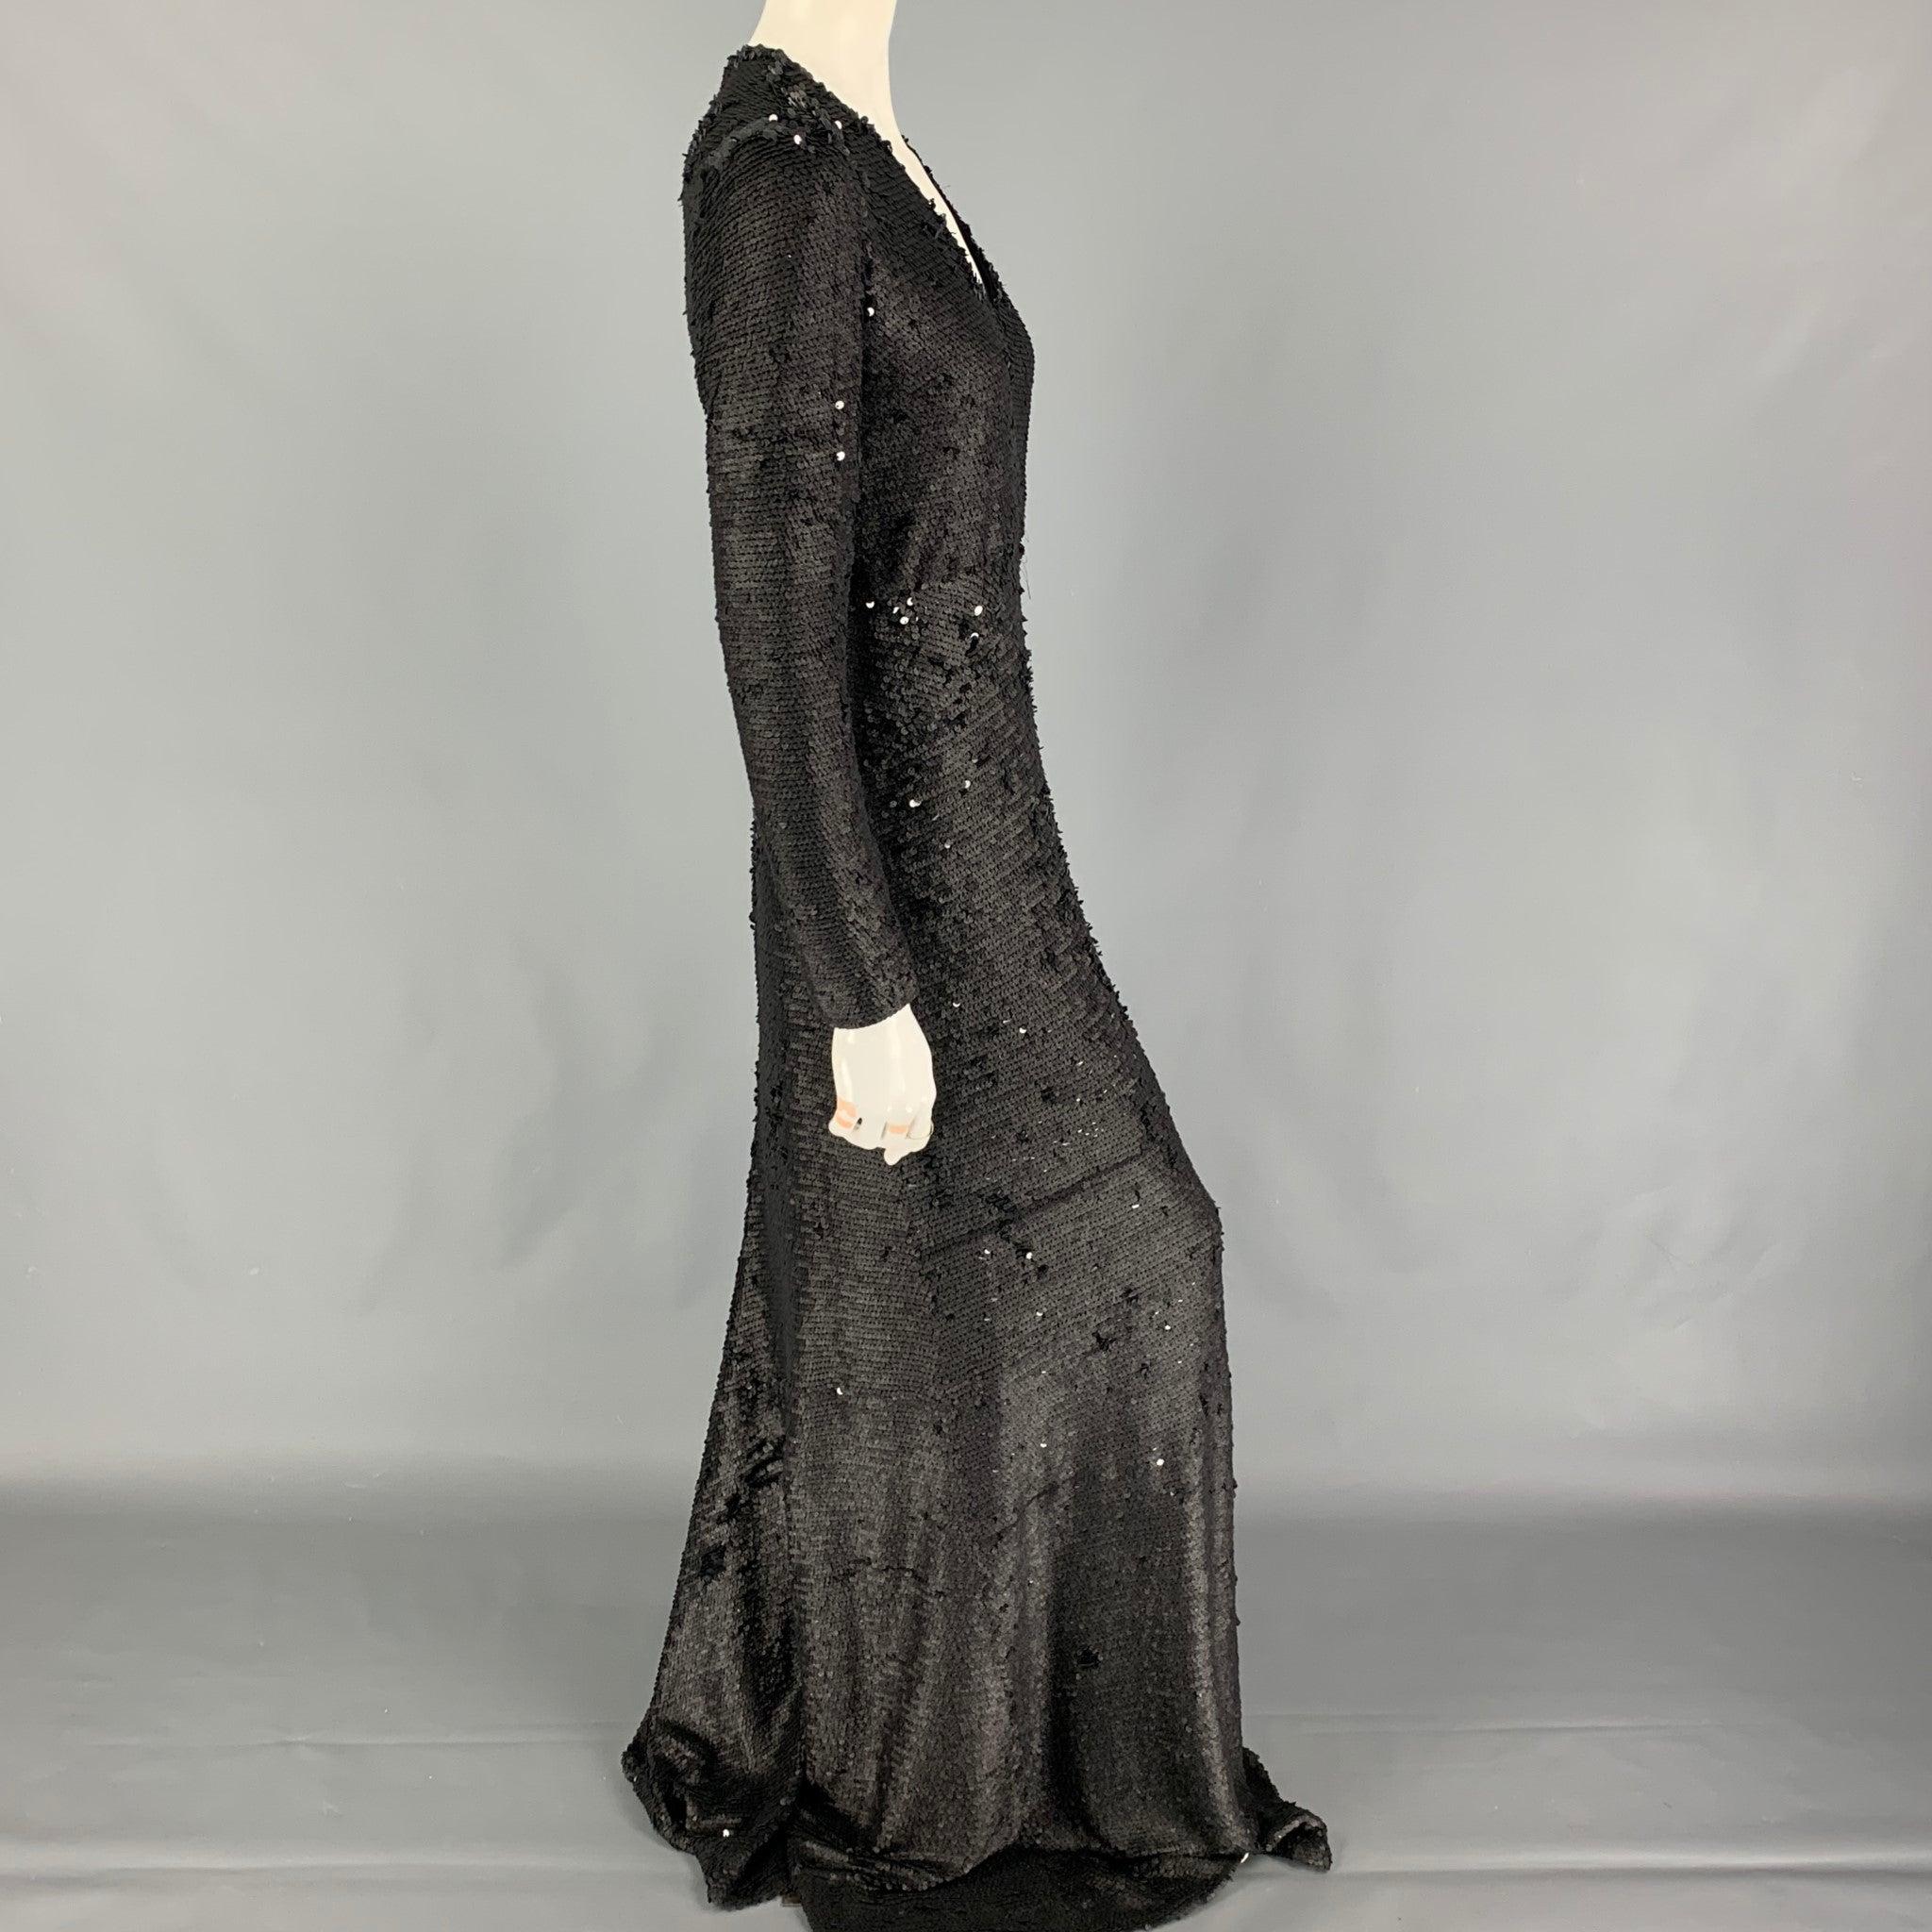 Das Kleid von PORTS 1961 besteht aus einer schwarzen, mit Pailletten besetzten Polyestermischung und hat lange Ärmel, einen V-Ausschnitt und einen Reißverschluss auf der Rückseite.
Sehr gut
Gebrauchtes Zustand. 

Markiert:   42 

Abmessungen: 
